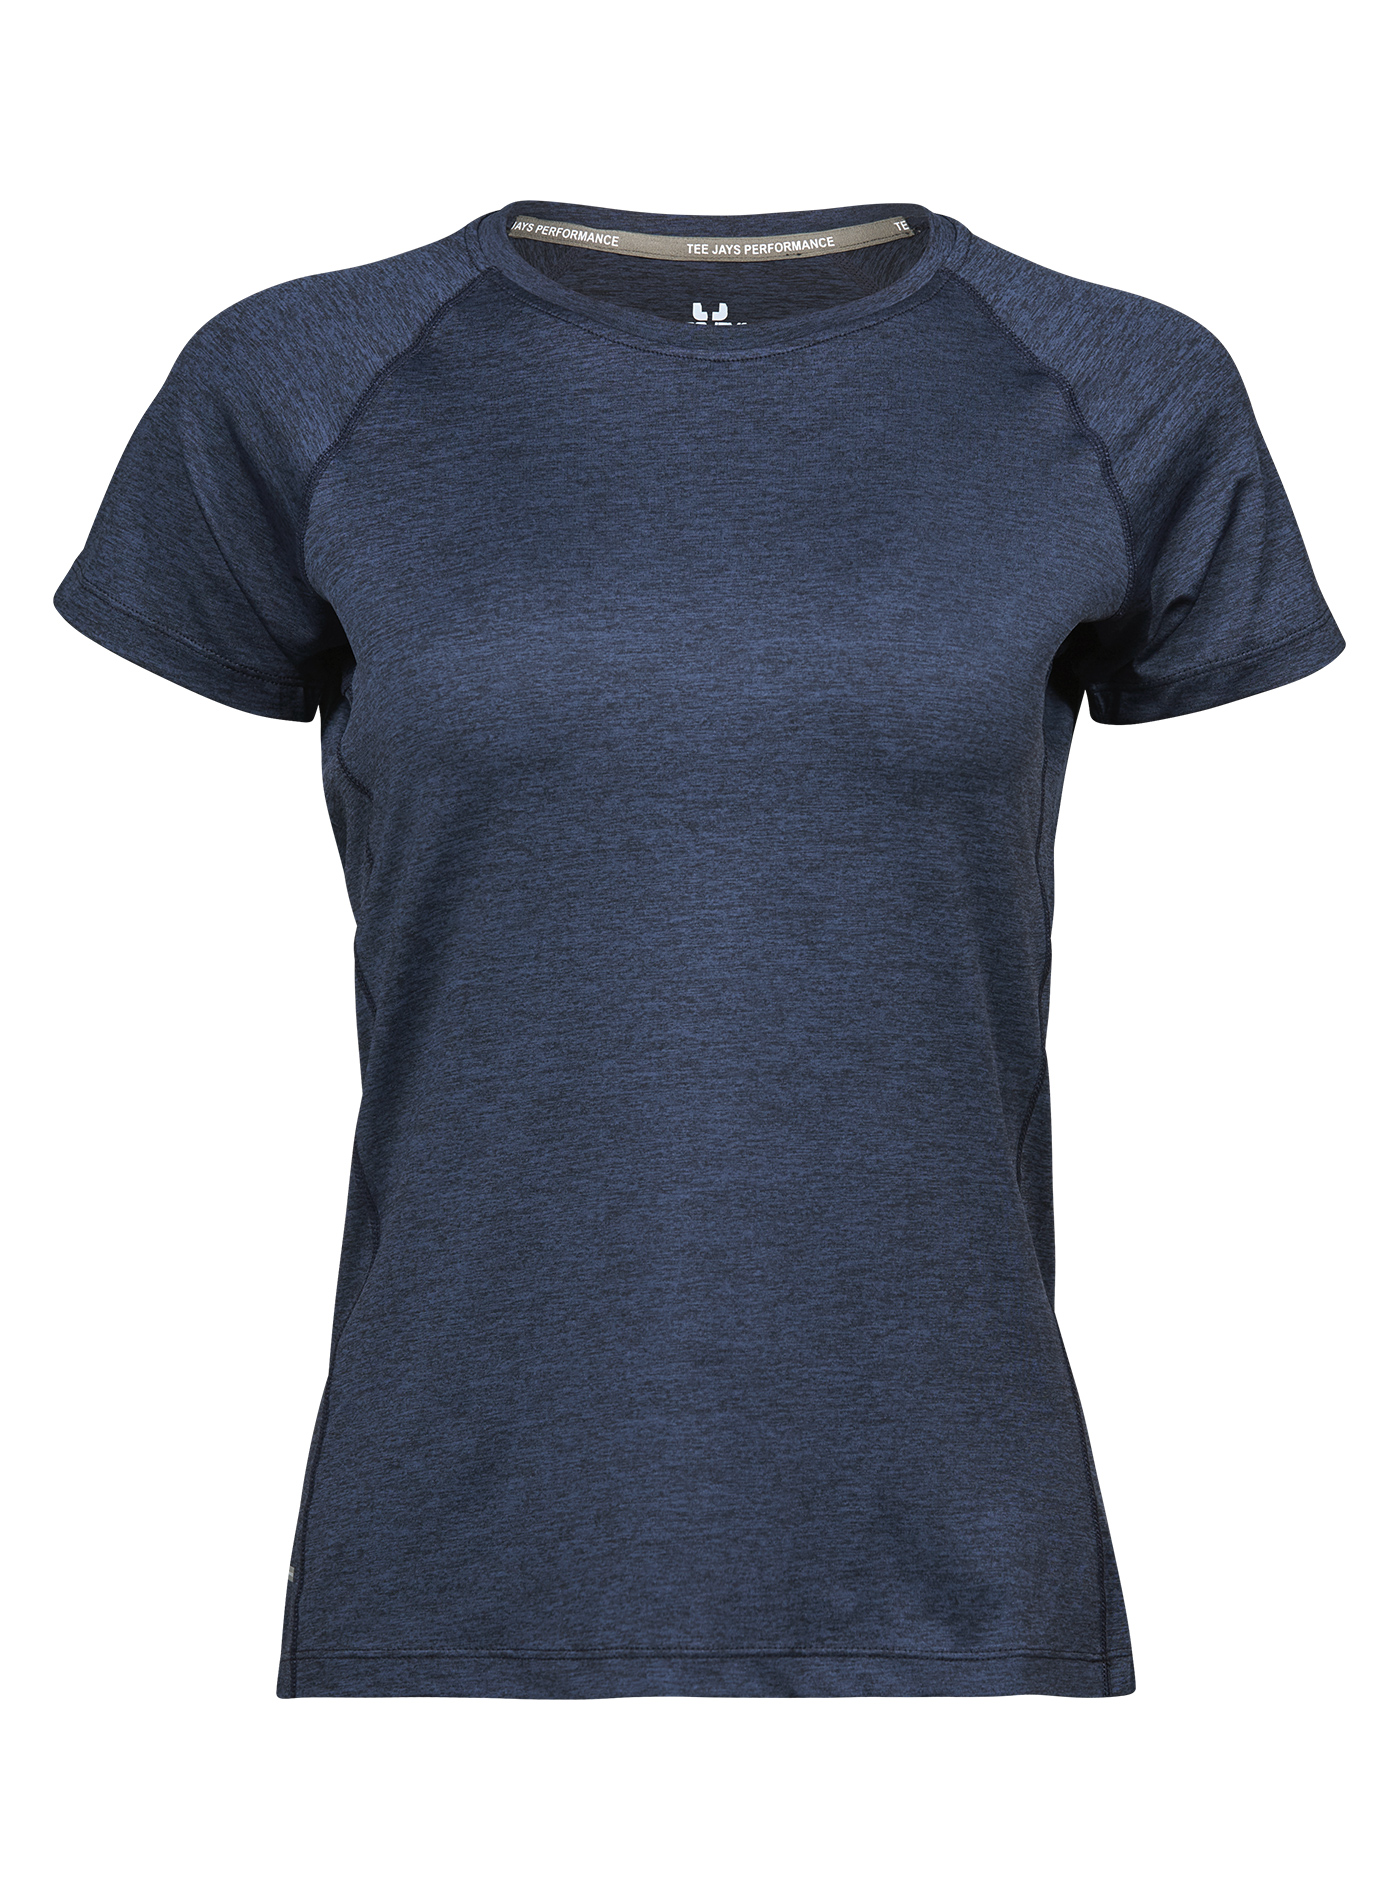 Dámské sportovní tričko cool dry Tee Jays - Temně modrá M